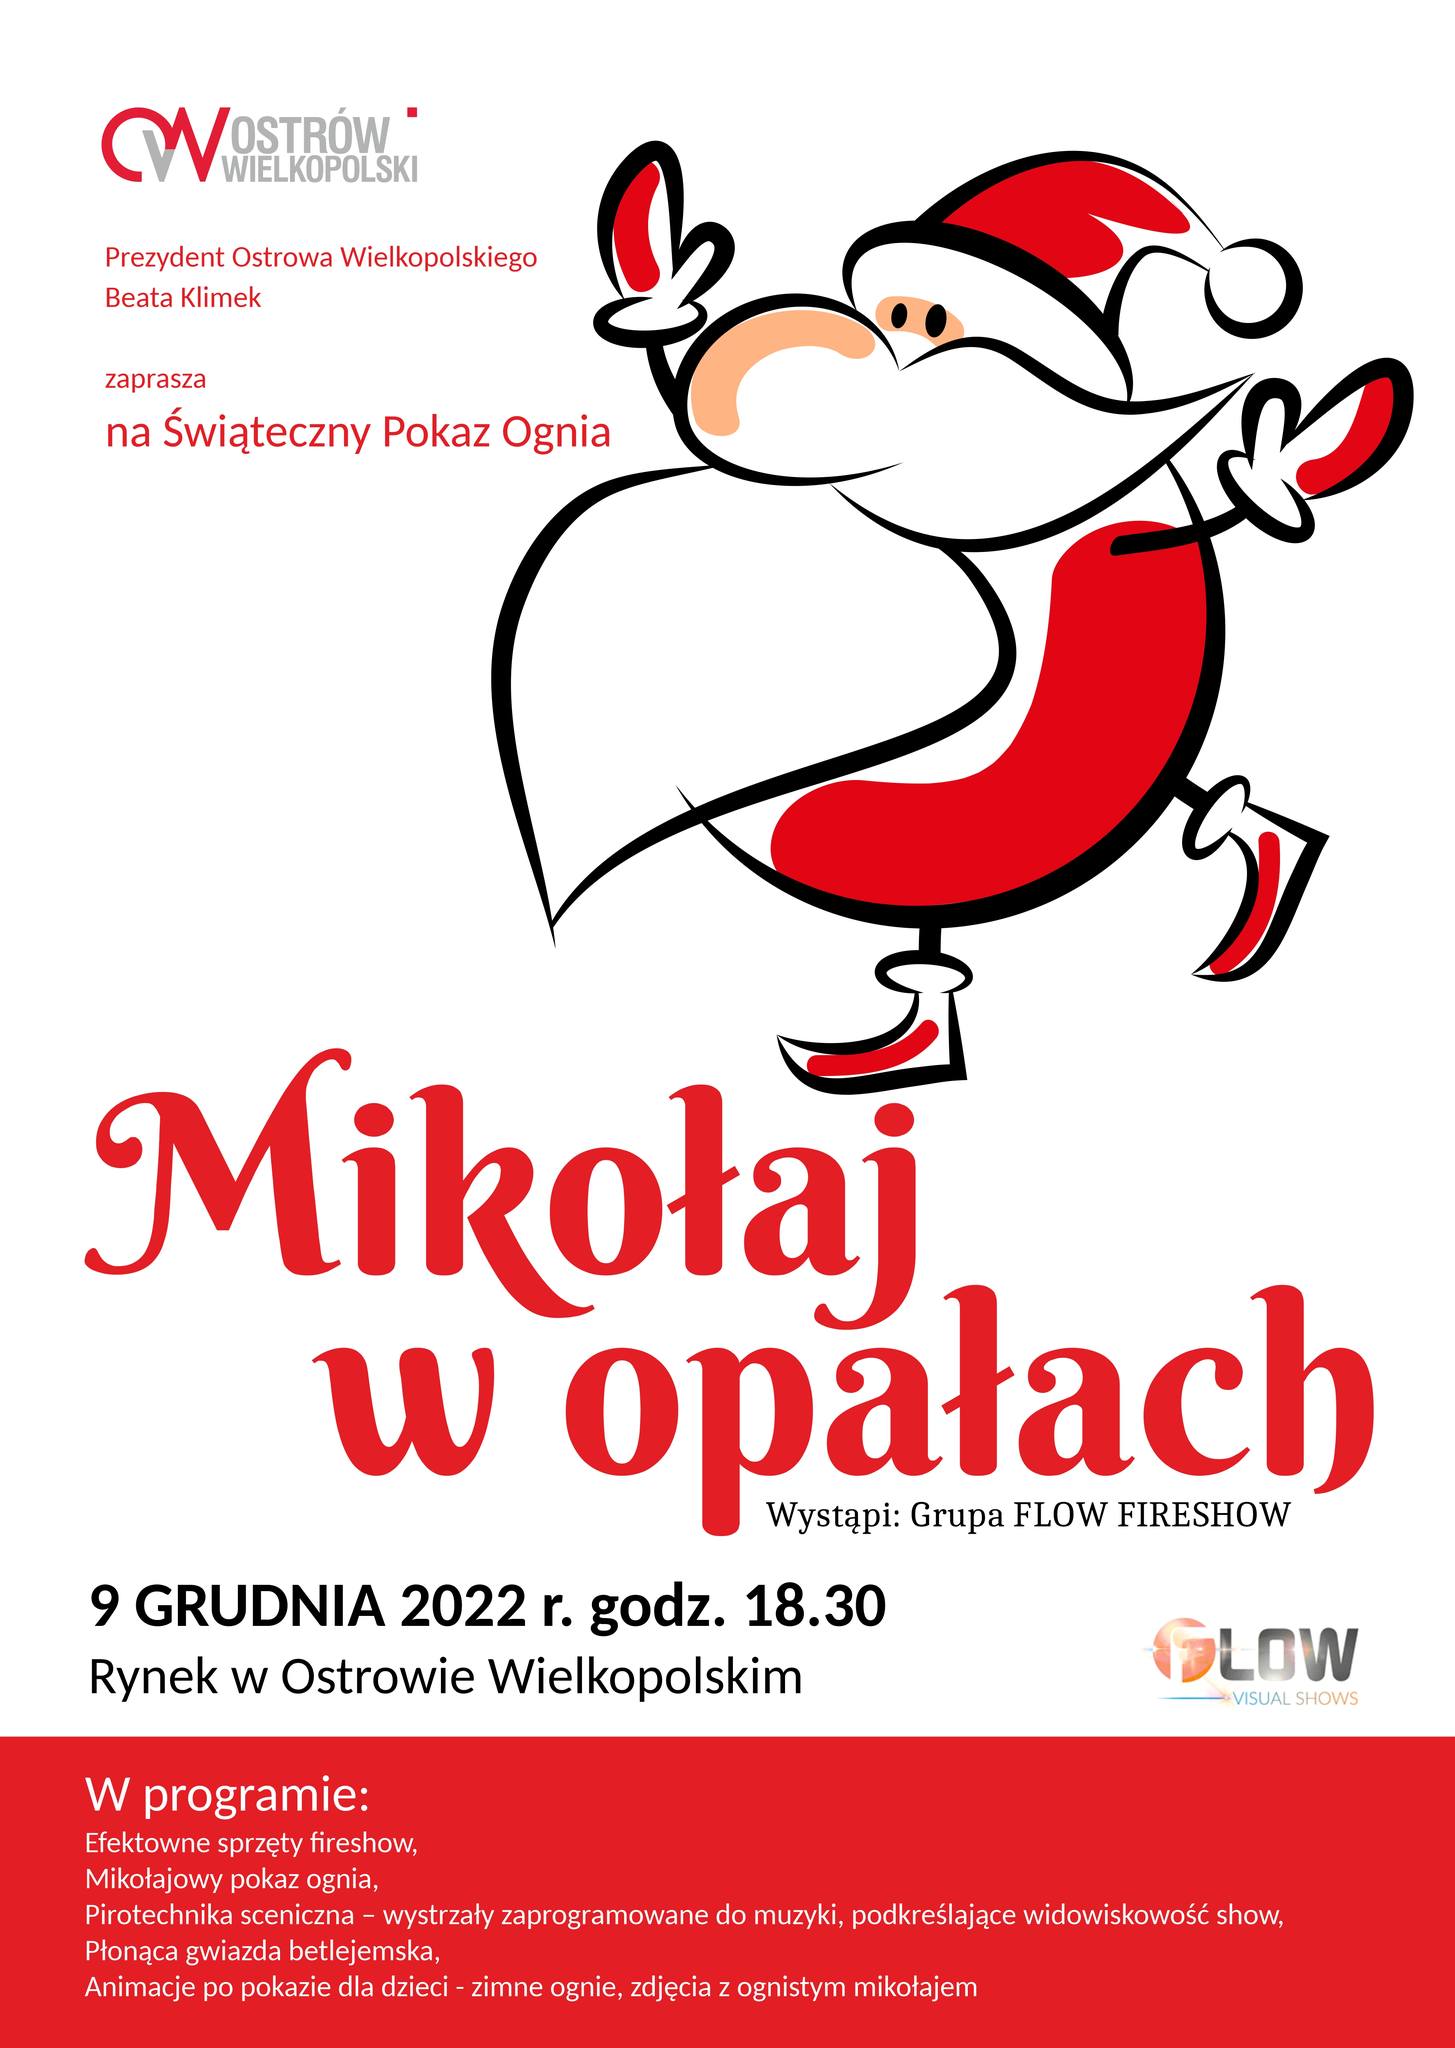 Plakat informujacy o świątecznym Pokazie Ognia na Rynku w Ostrowie Wielkopolskim w dniu 9 grudnia 2022 roku o godzinie 18.30